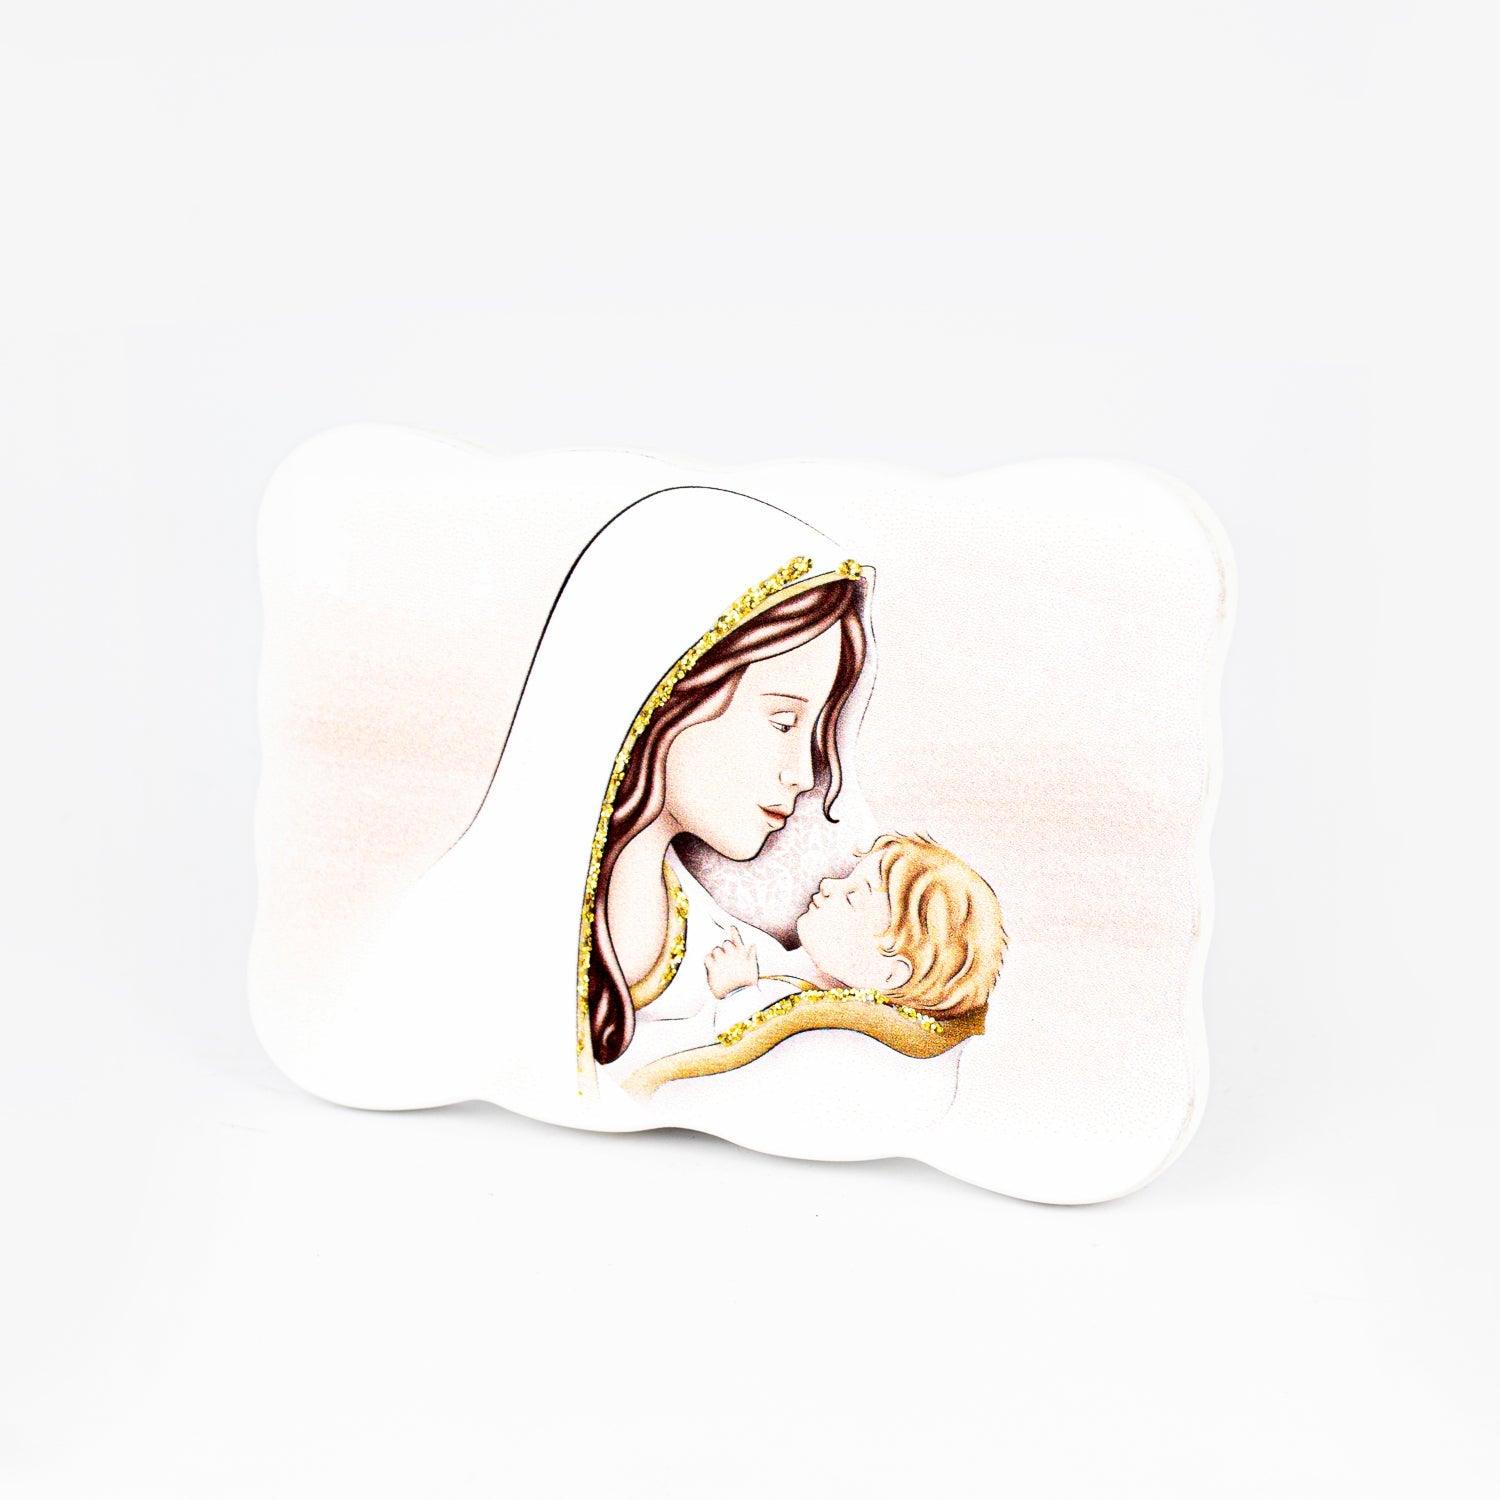 Icona Nuvoletta Tema Maternità Glitterata su Legno Sagomato da Appoggio e Muro Icone Sacre Albalu Bomboniere Modello 1 Standard 